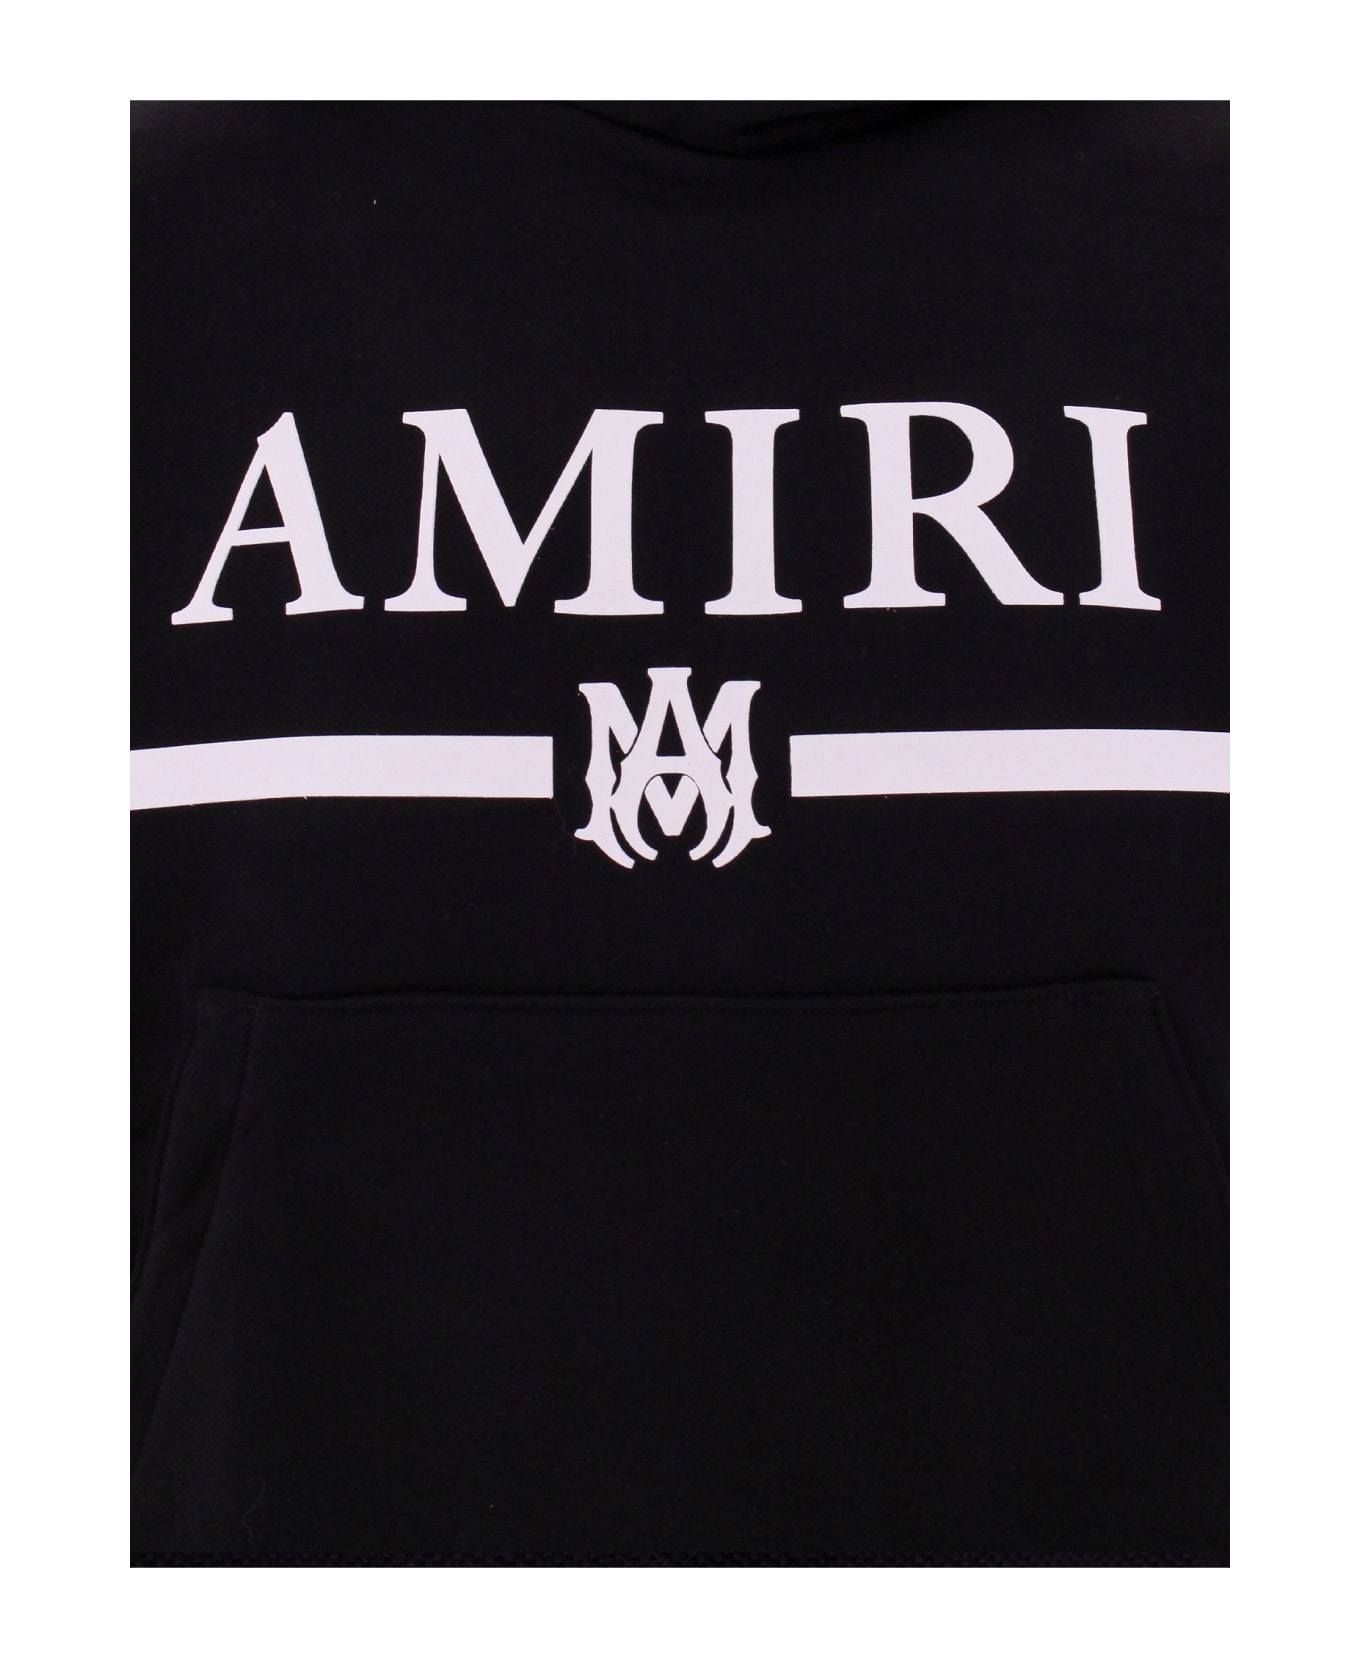 AMIRI Sweatshirt